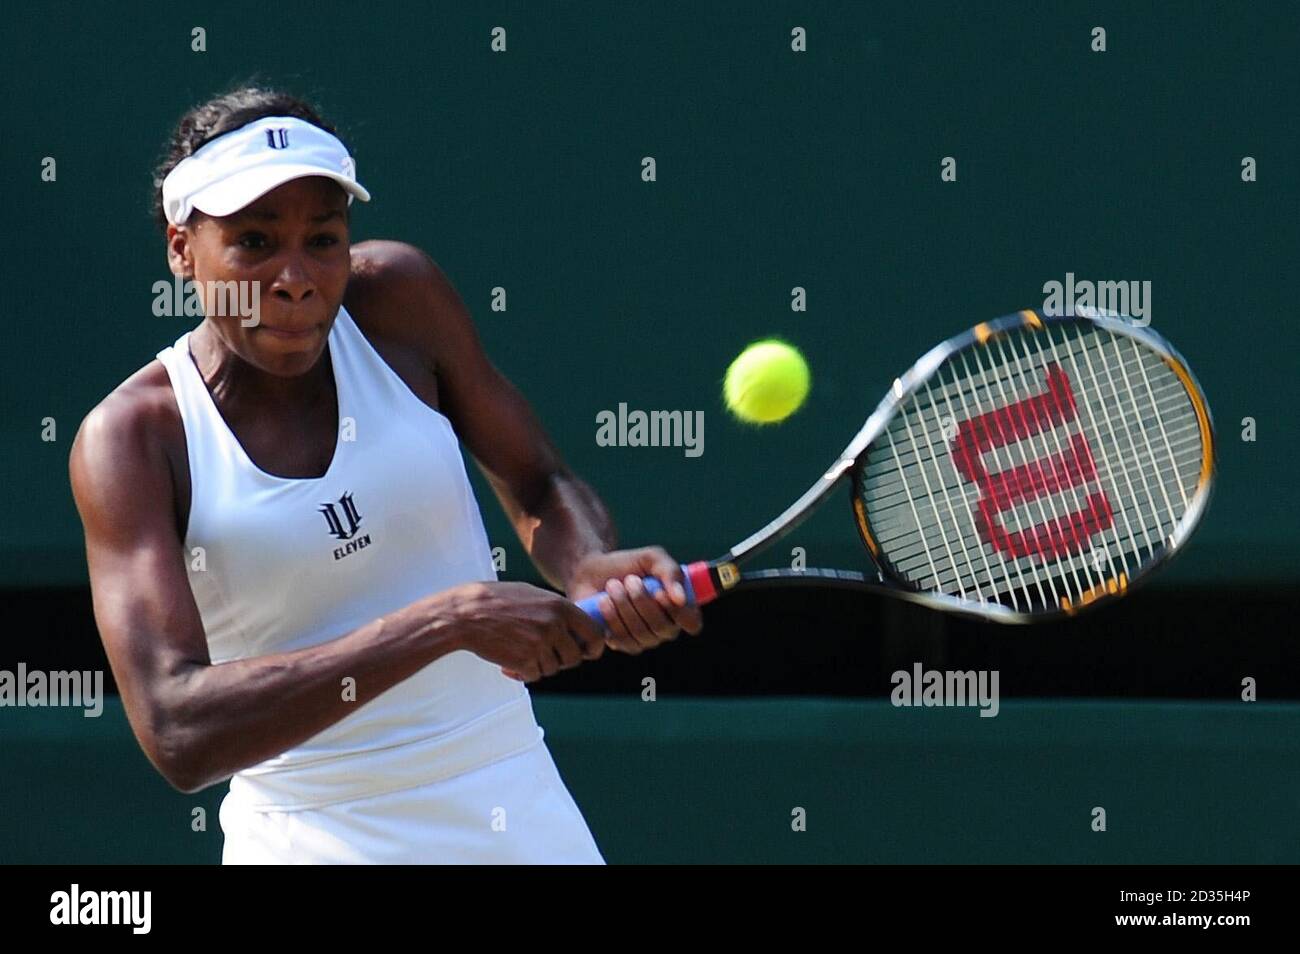 Venus Williams des États-Unis en action contre Dinara Safina de Russie lors des championnats de Wimbledon au All England Lawn tennis and Croquet Club, Wimbledon, Londres. Banque D'Images